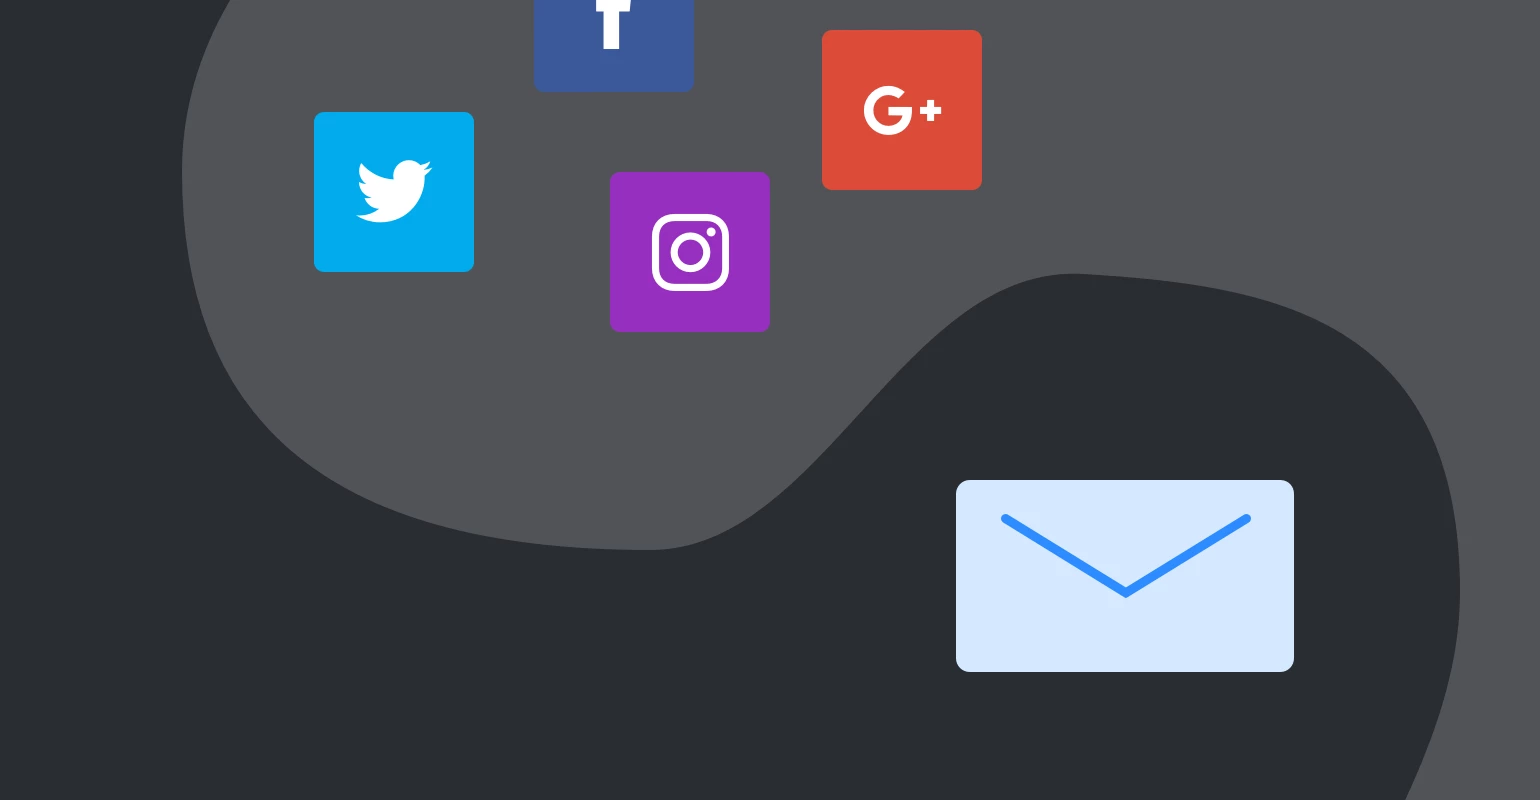 Email vs. social media inbox icon vs social icons - MailerLite